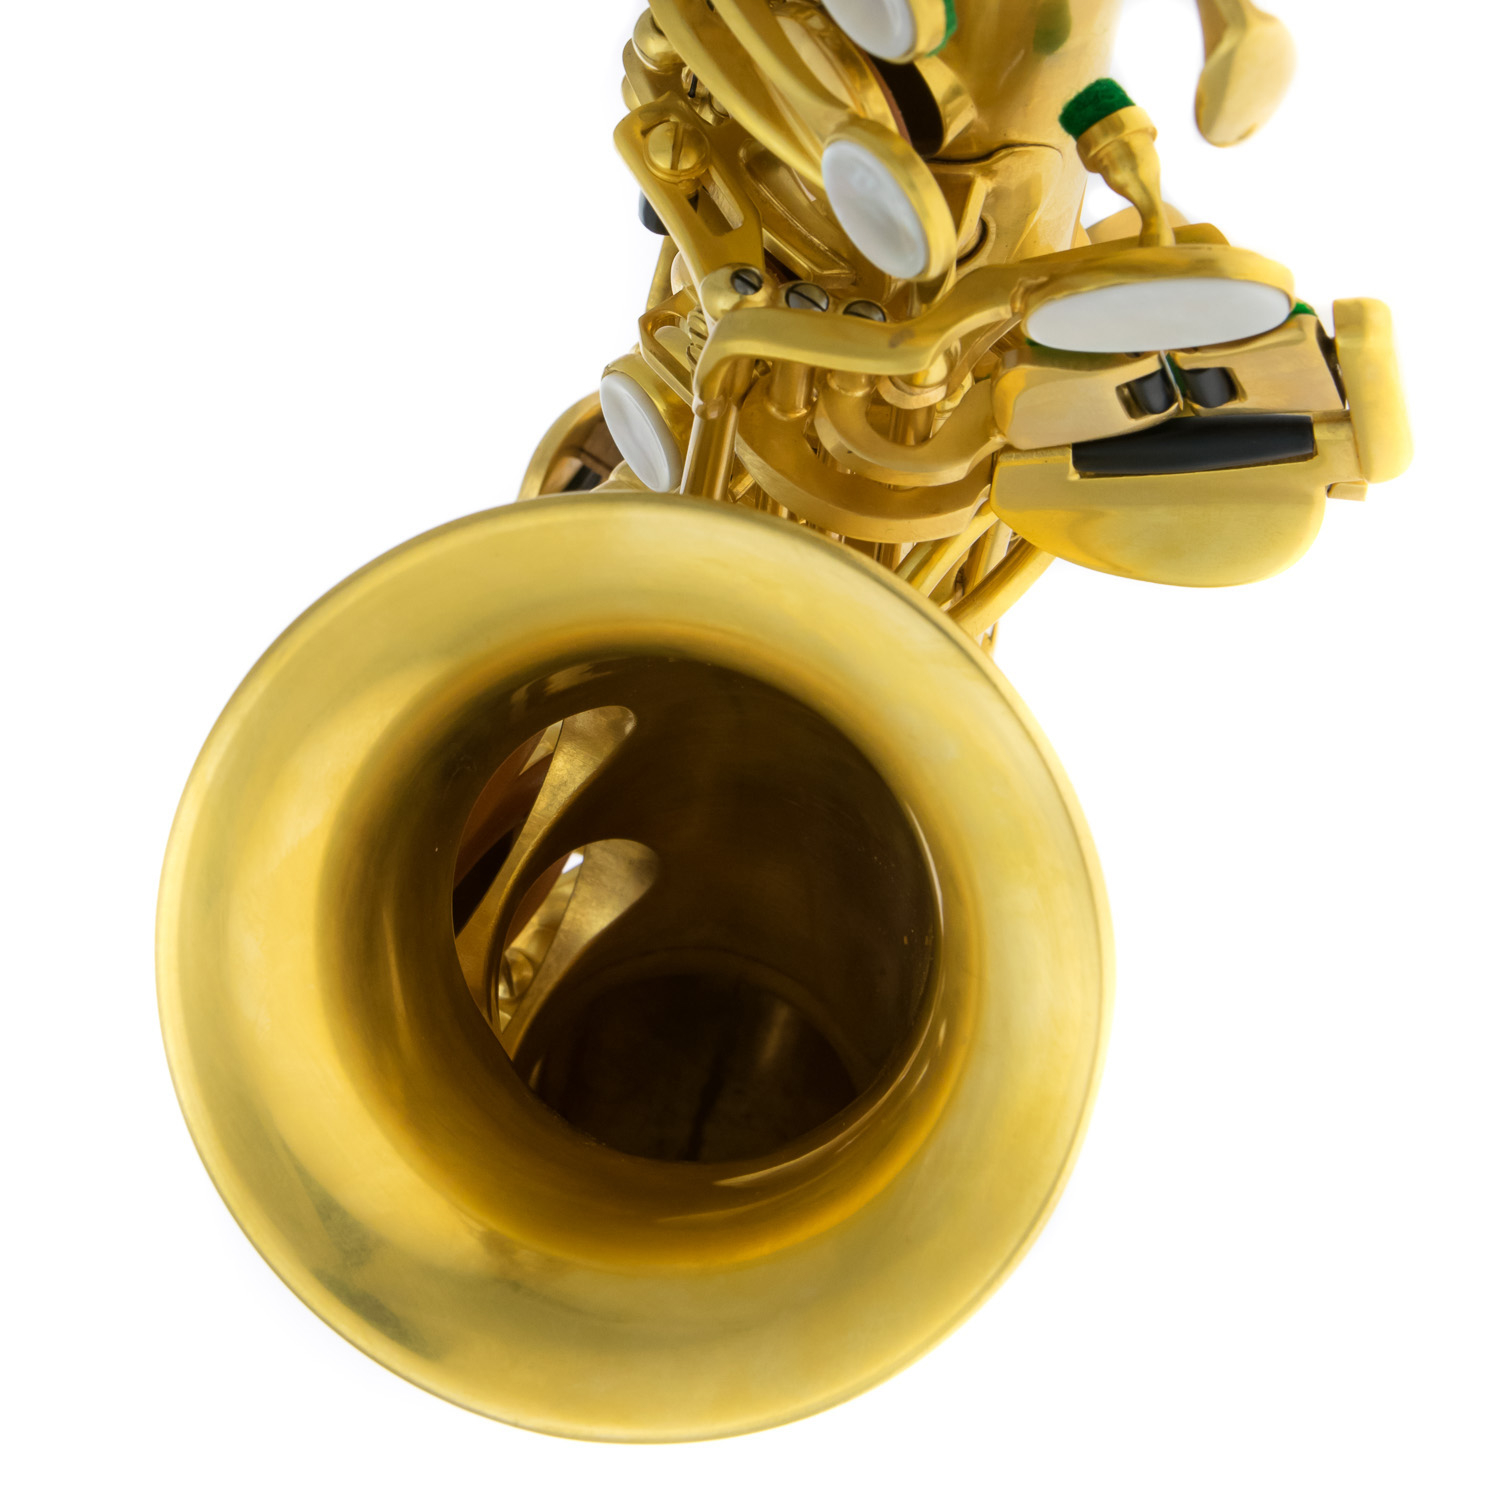 Rampone & Cazzani Curved Soprano Sax - R1 Jazz - 24K Gold Plated